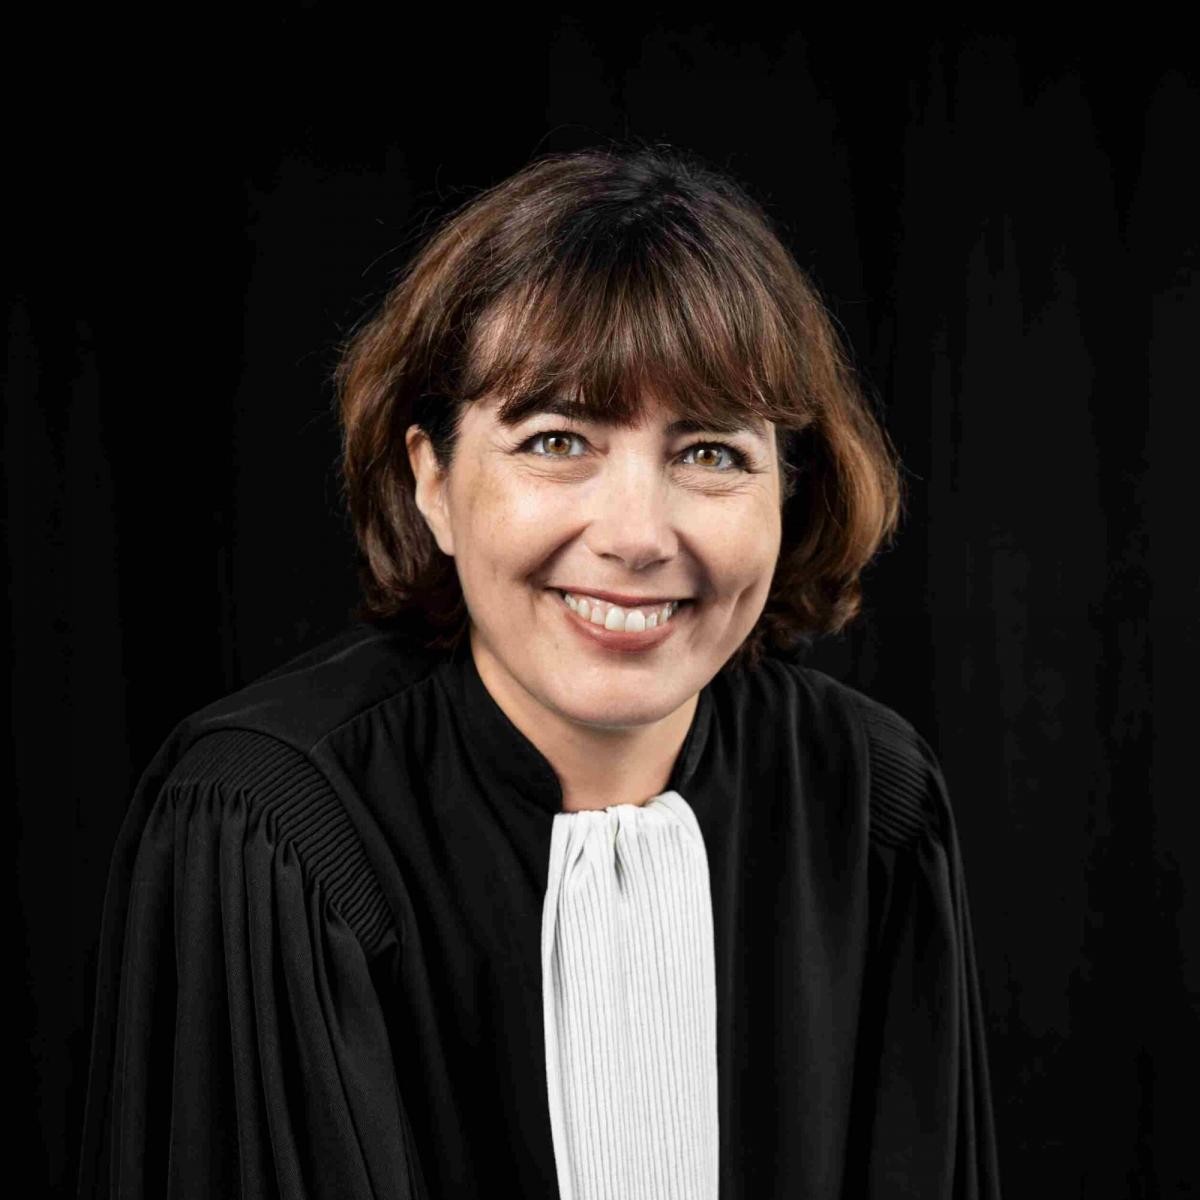 1er janvier 2017 : L'entrée en vigueur du divorce par consentement mutuel avec avocats, sans juge et enregistré par notaire. Par Michèle Bauer, Avocate.